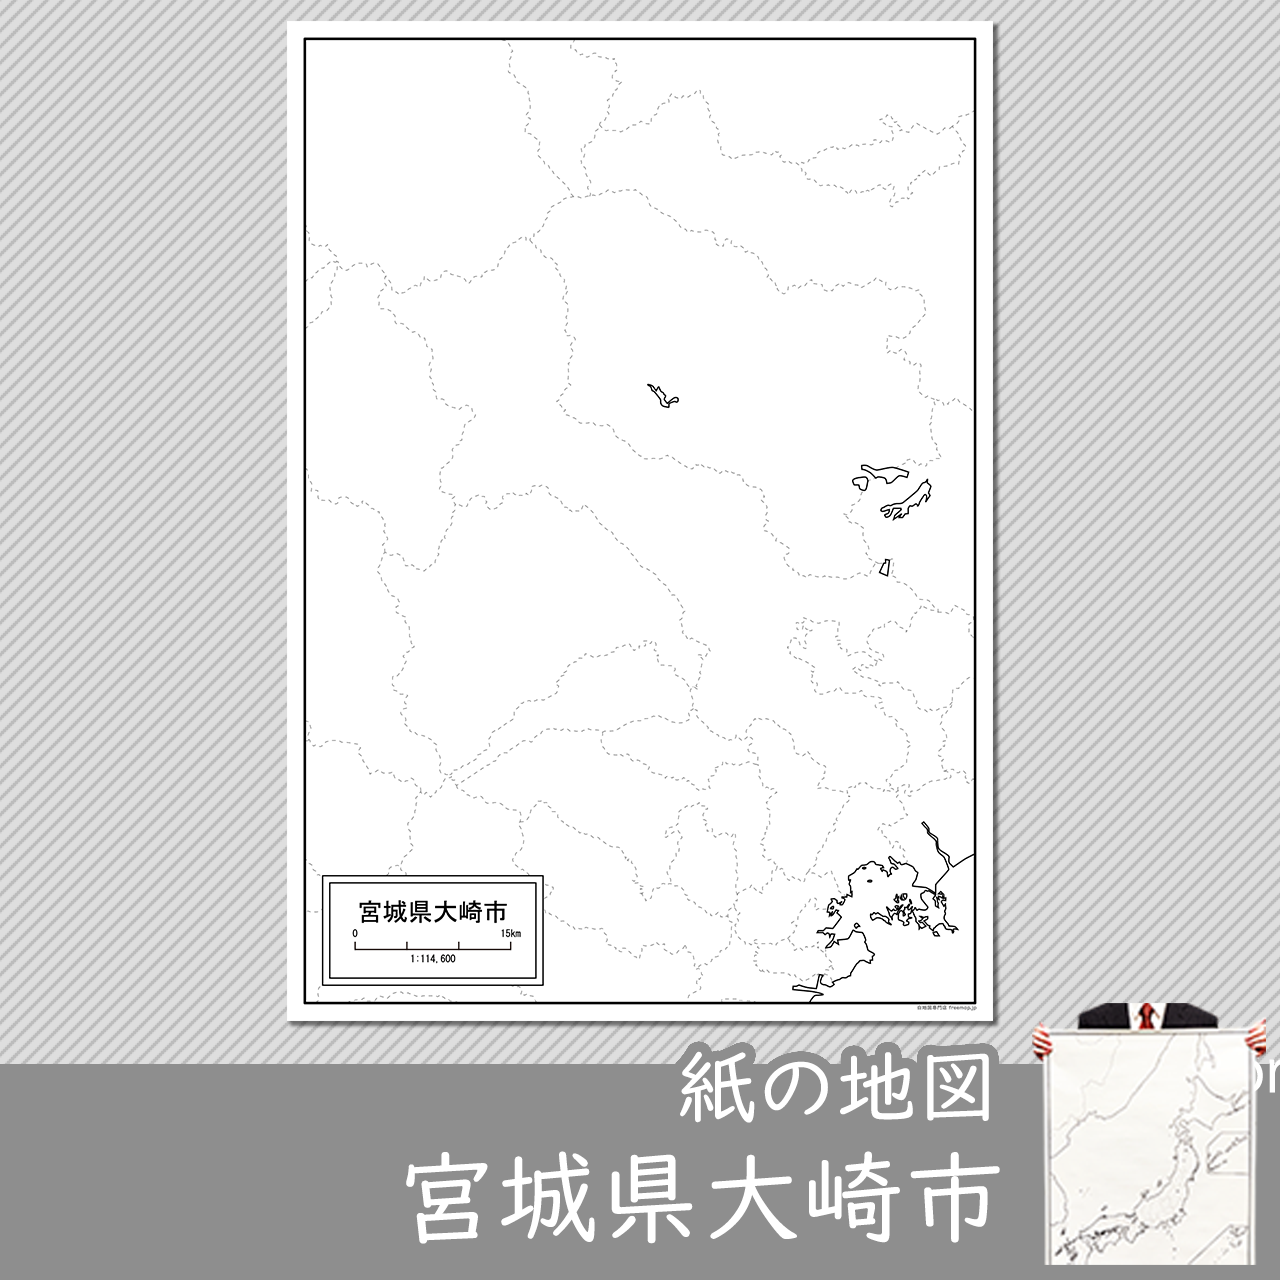 大崎市の紙の白地図のサムネイル